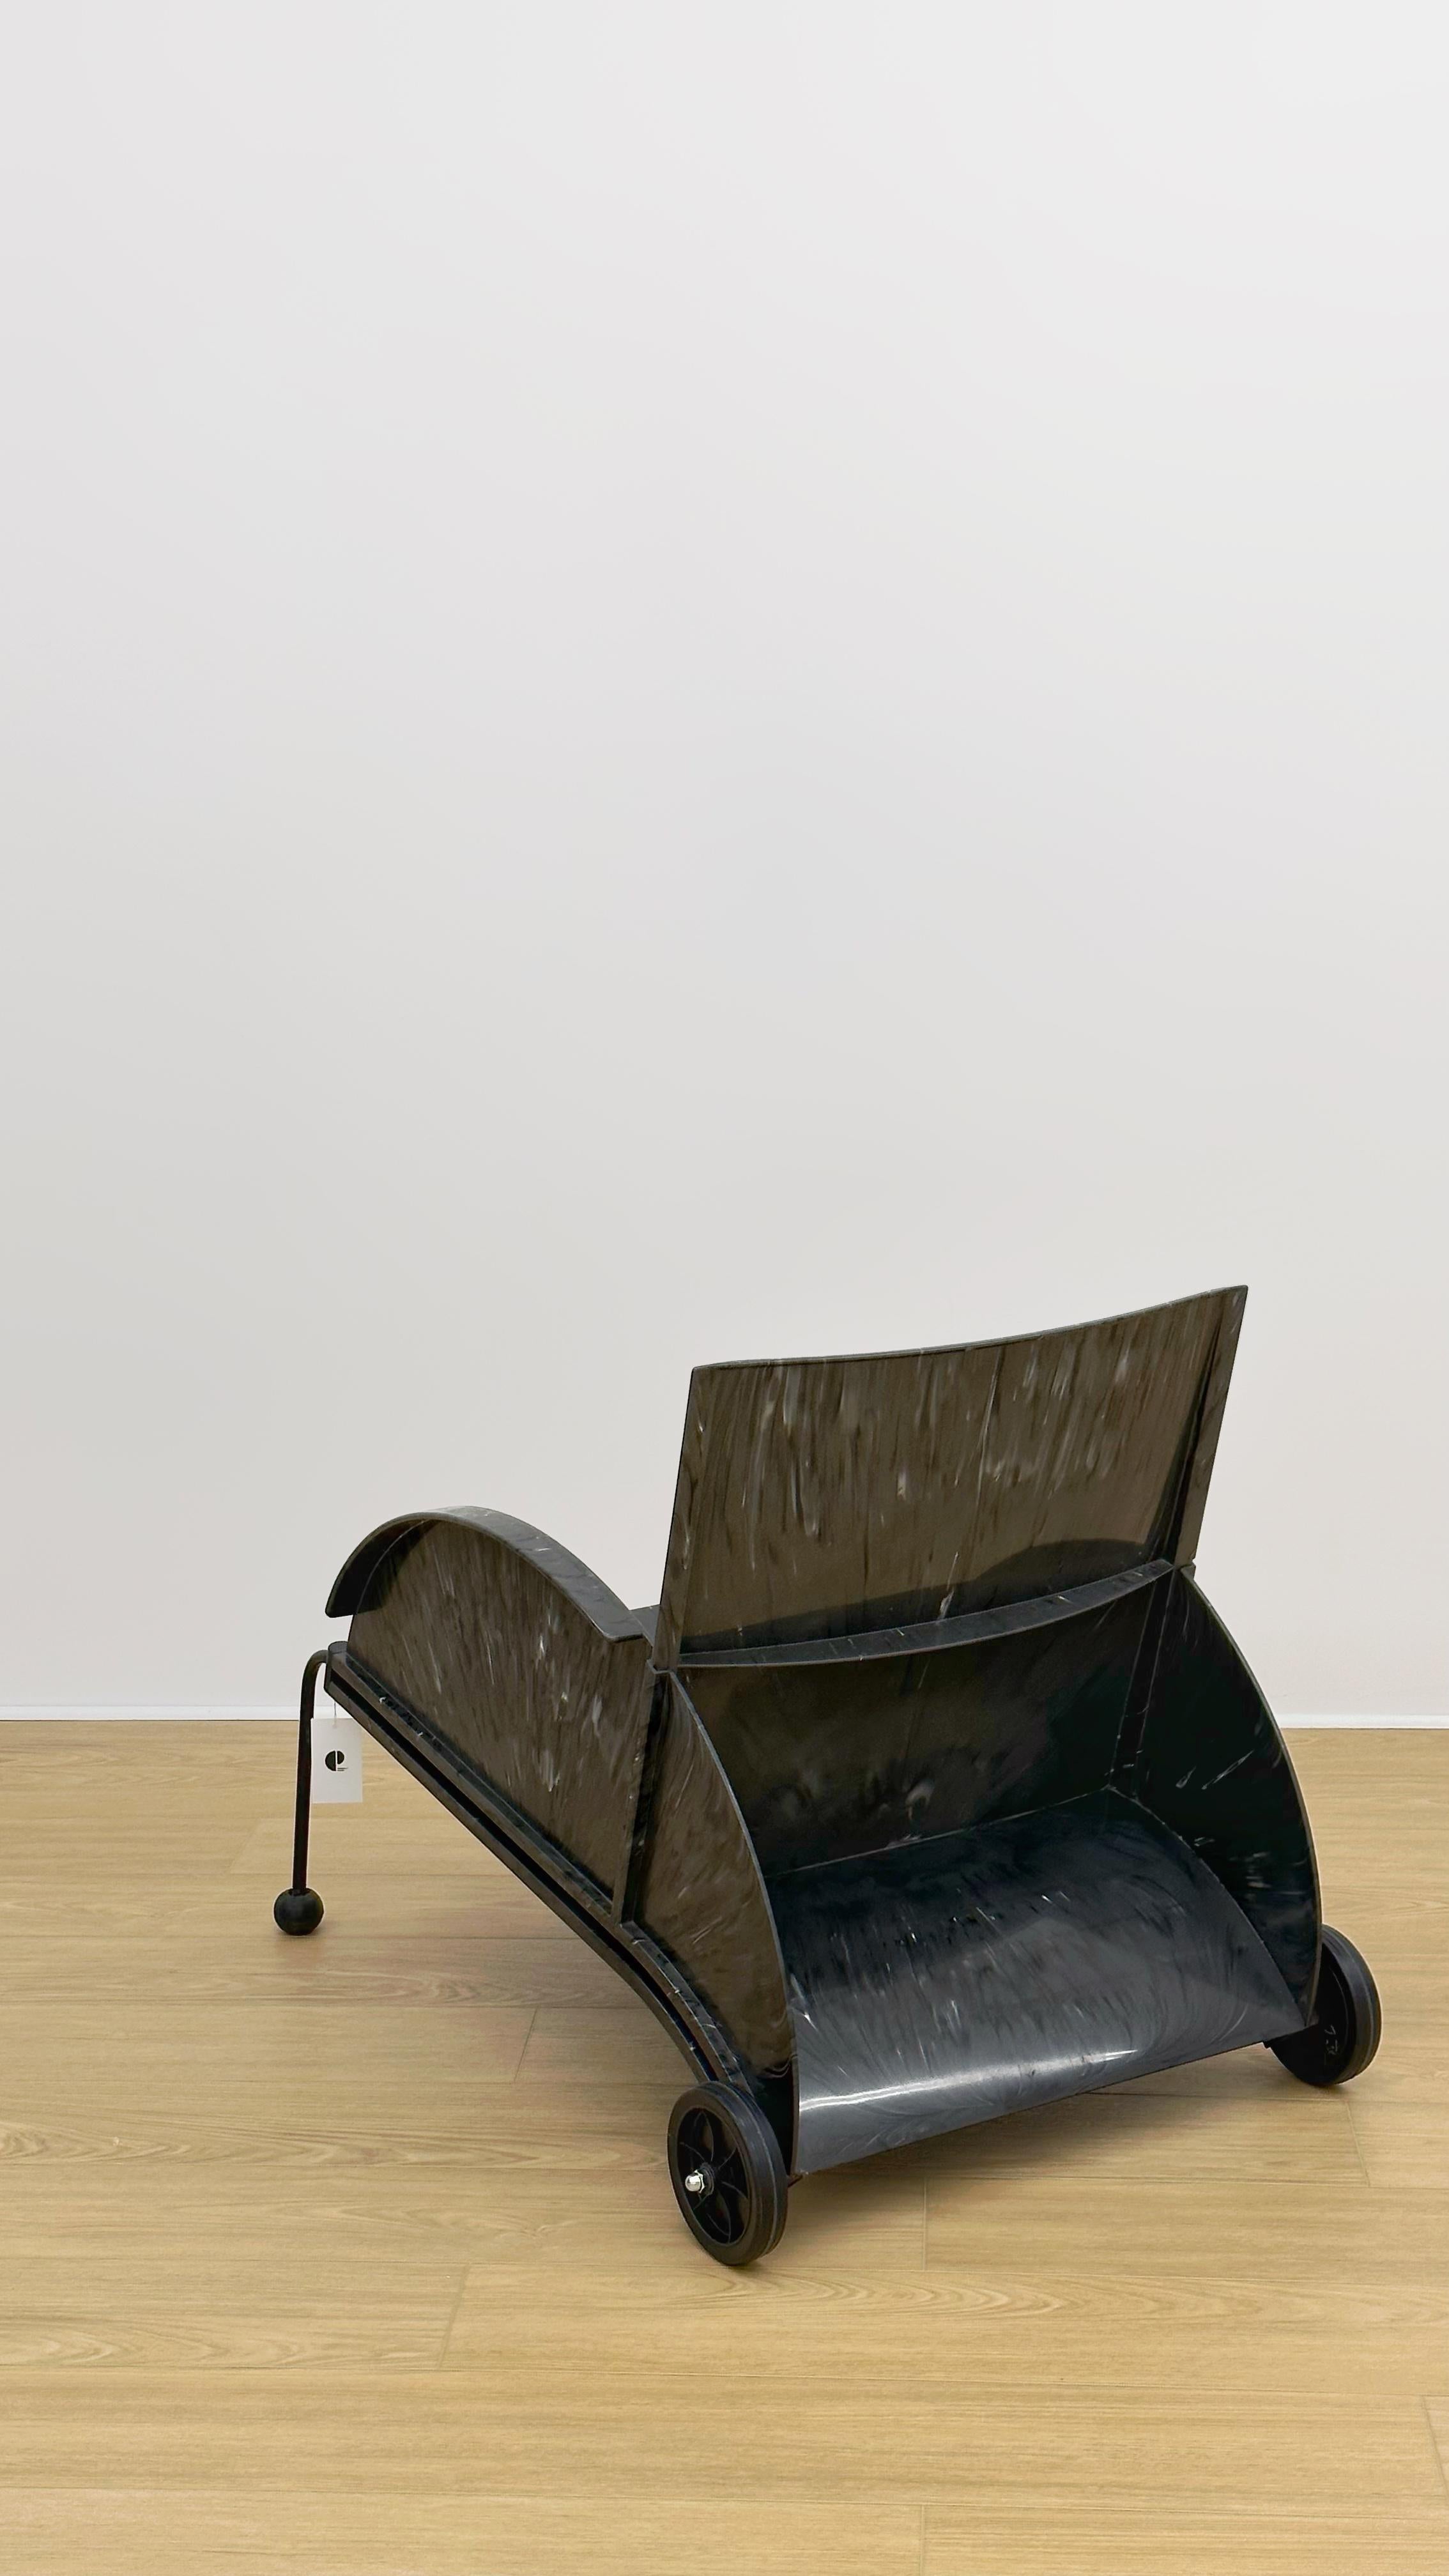 Italie, 1988. Chaise longue en plastique moulé par injection à partir d'un mélange de matériaux en polyéthylène recyclé qui donne à chaque chaise un aspect marbré unique.